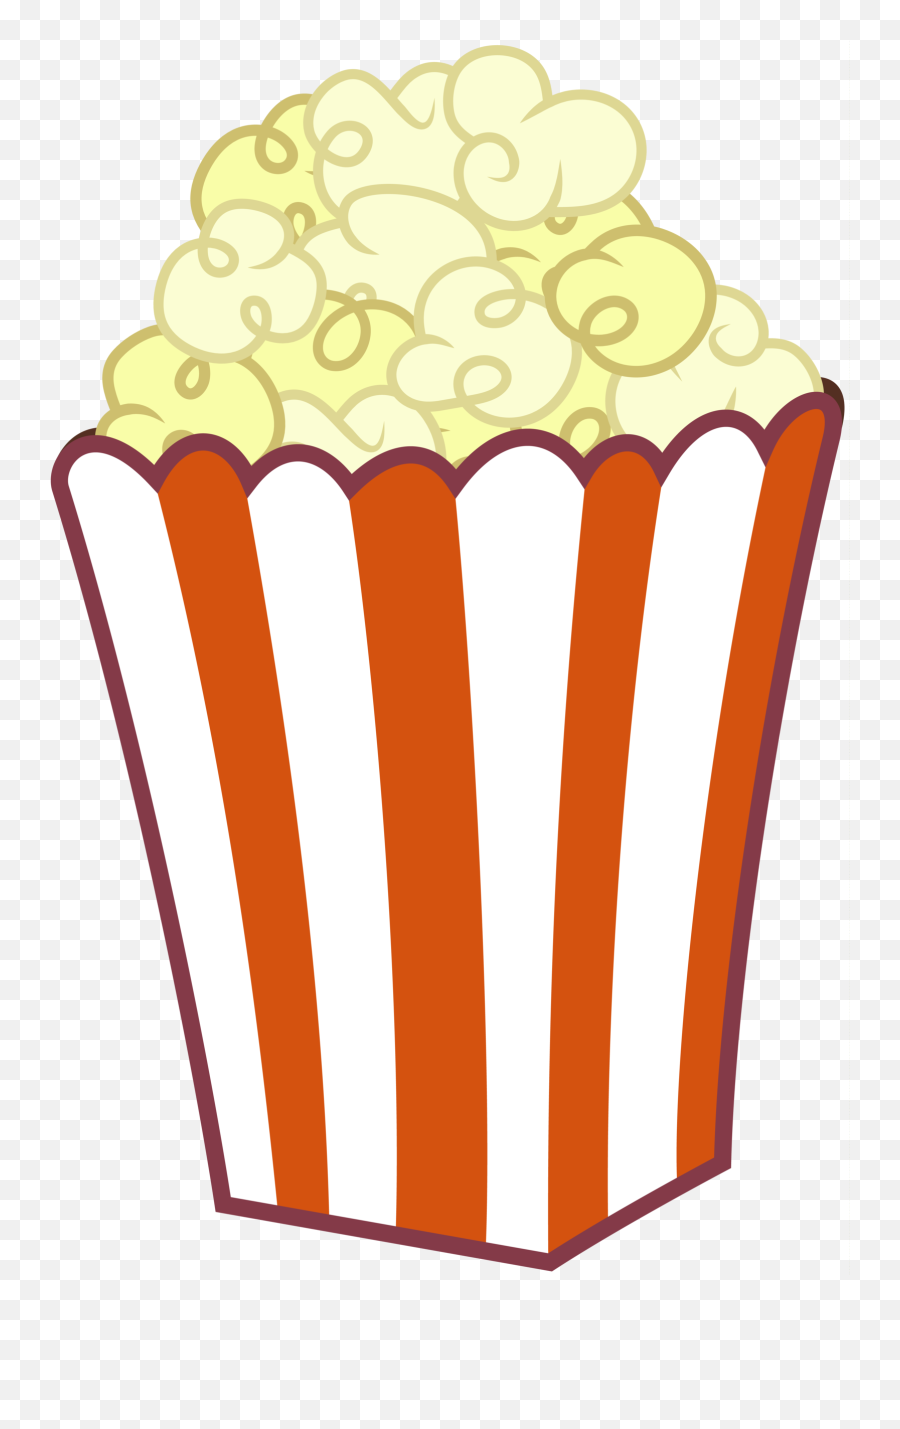 Popcorn Clip Art - Clip Art Cartoon Popcorn Emoji,Popcorn Clipart